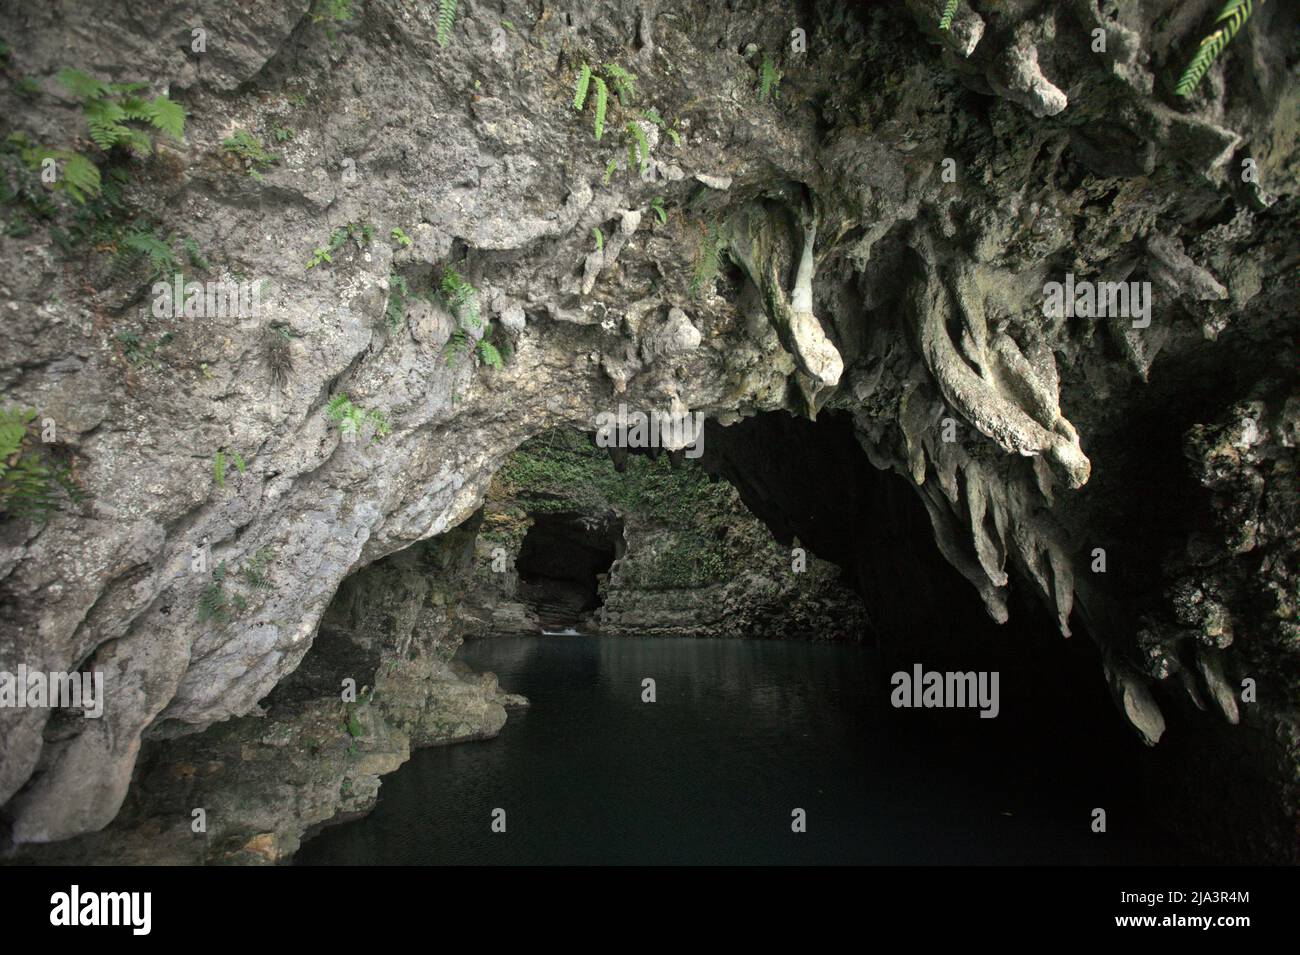 Grottes calcaires de Waikelo Sawah, une source d'eau rare à Sumba, une île régulièrement touchée par la sécheresse, située dans le village de Tema Tana, à l'est de Wewewa, au sud-ouest de Sumba, à l'est de Nusa Tenggara, en Indonésie. Banque D'Images